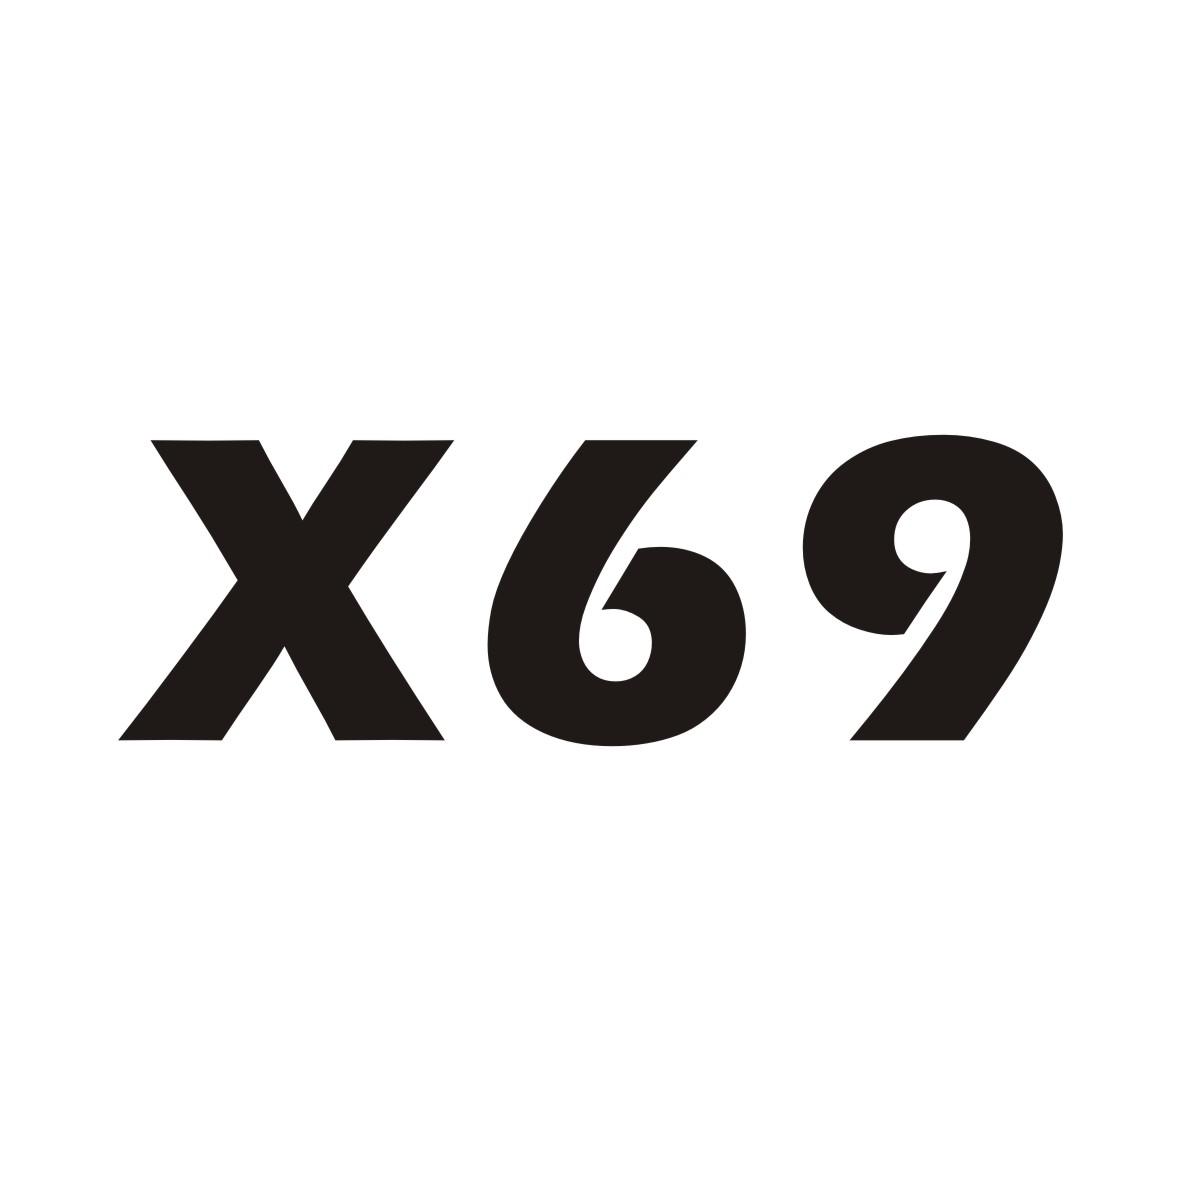 X 69